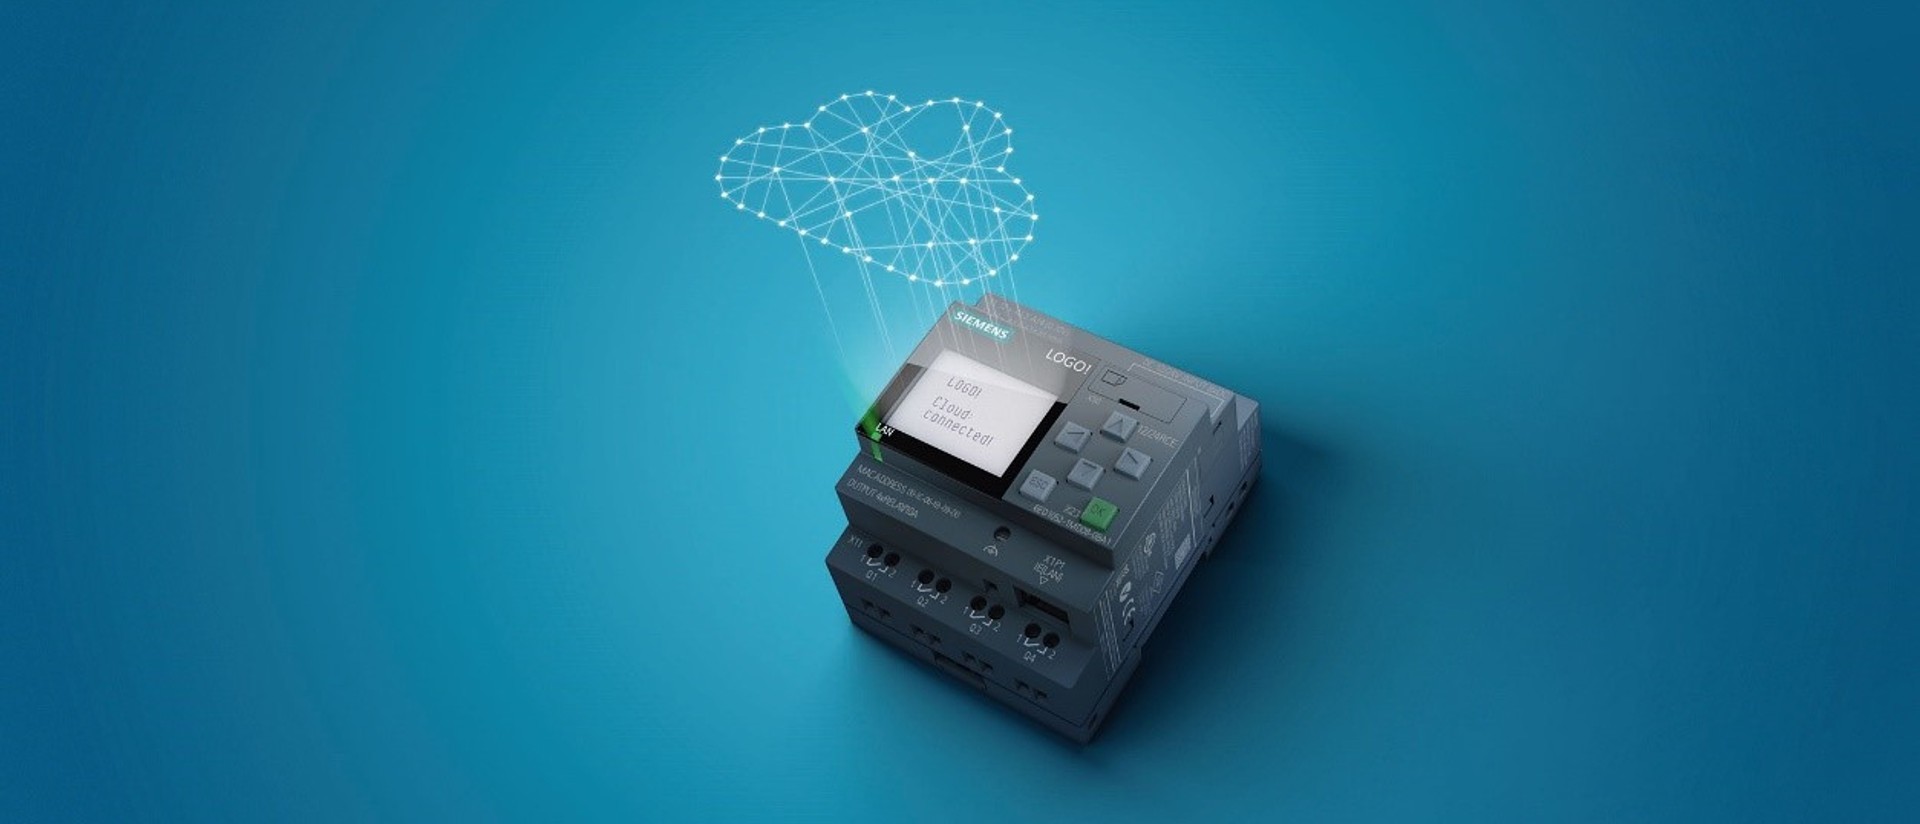 Společnost Siemens představuje nejnovější inovaci chytrého logického modulu Logo!, jehož verze 8.3 nově umožňuje přímé připojení do cloudu